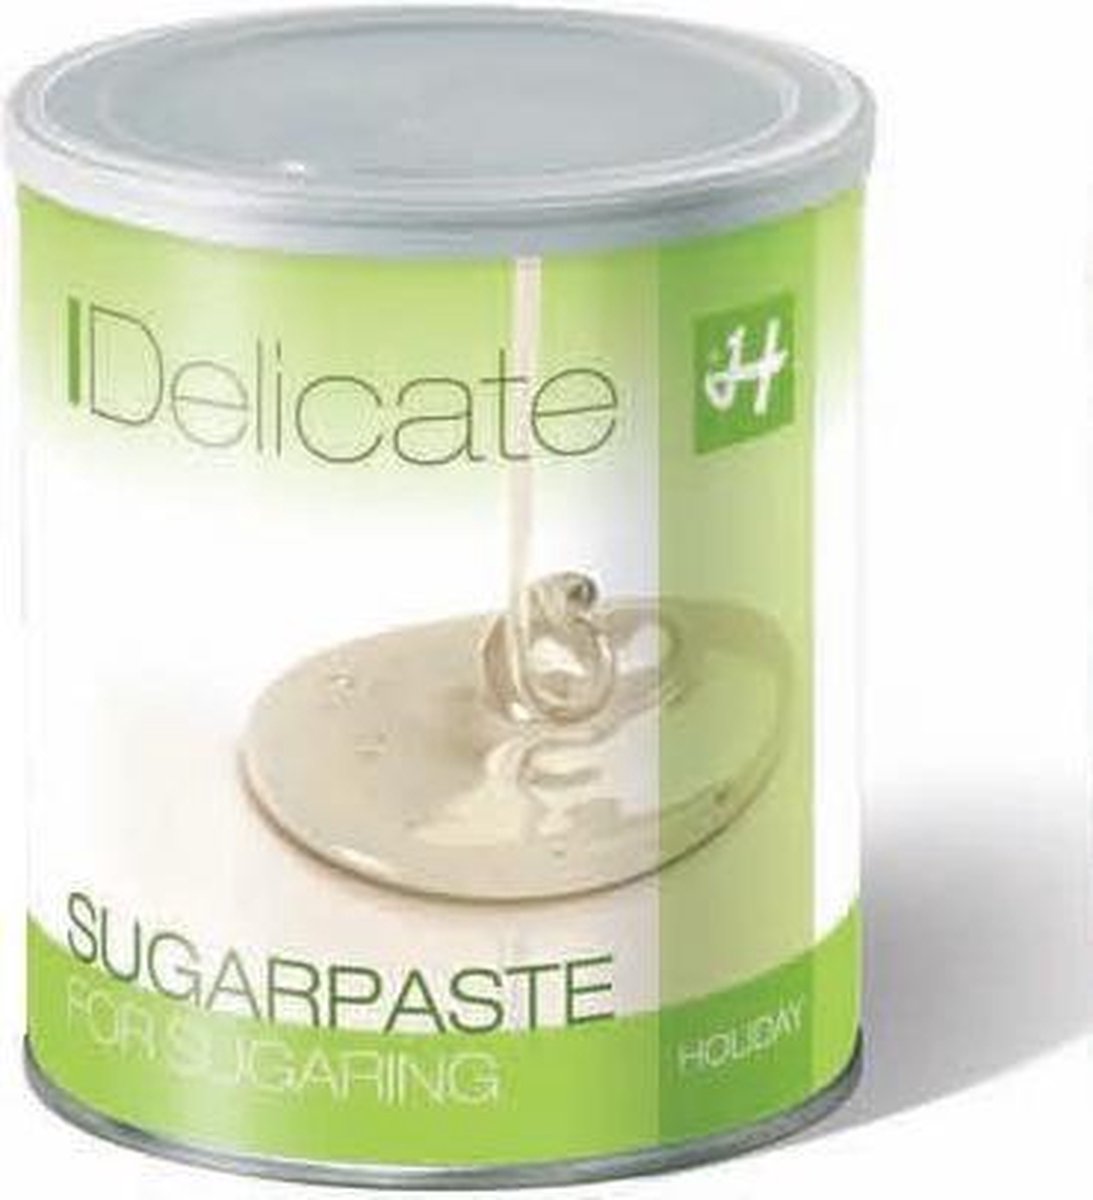 Holiday Sugarpaste Delicate | Ontharingswax | Professional Body Sugaring | 100% Natuurlijk | 100% Vegan | 100 % Biologisch afbreekbaar | Suikerpasta voor ontharen | Suikerpasta zonder citroenzuur